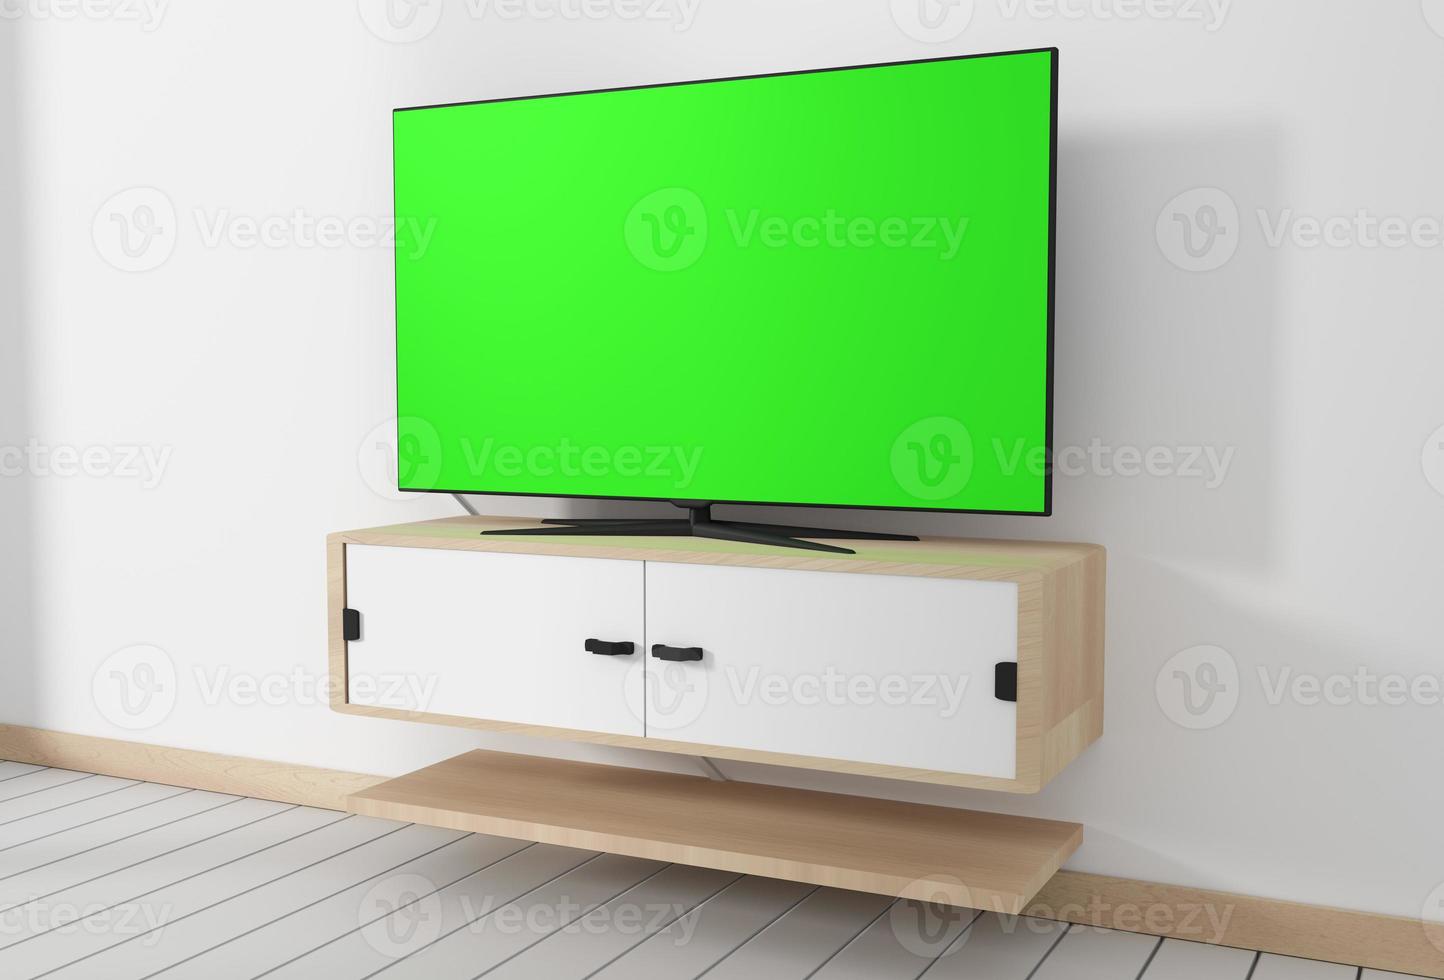 maquette de télévision intelligente avec écran vert vierge suspendu dans des conceptions minimales d'intérieur de salle vide blanche moderne. rendu 3D photo